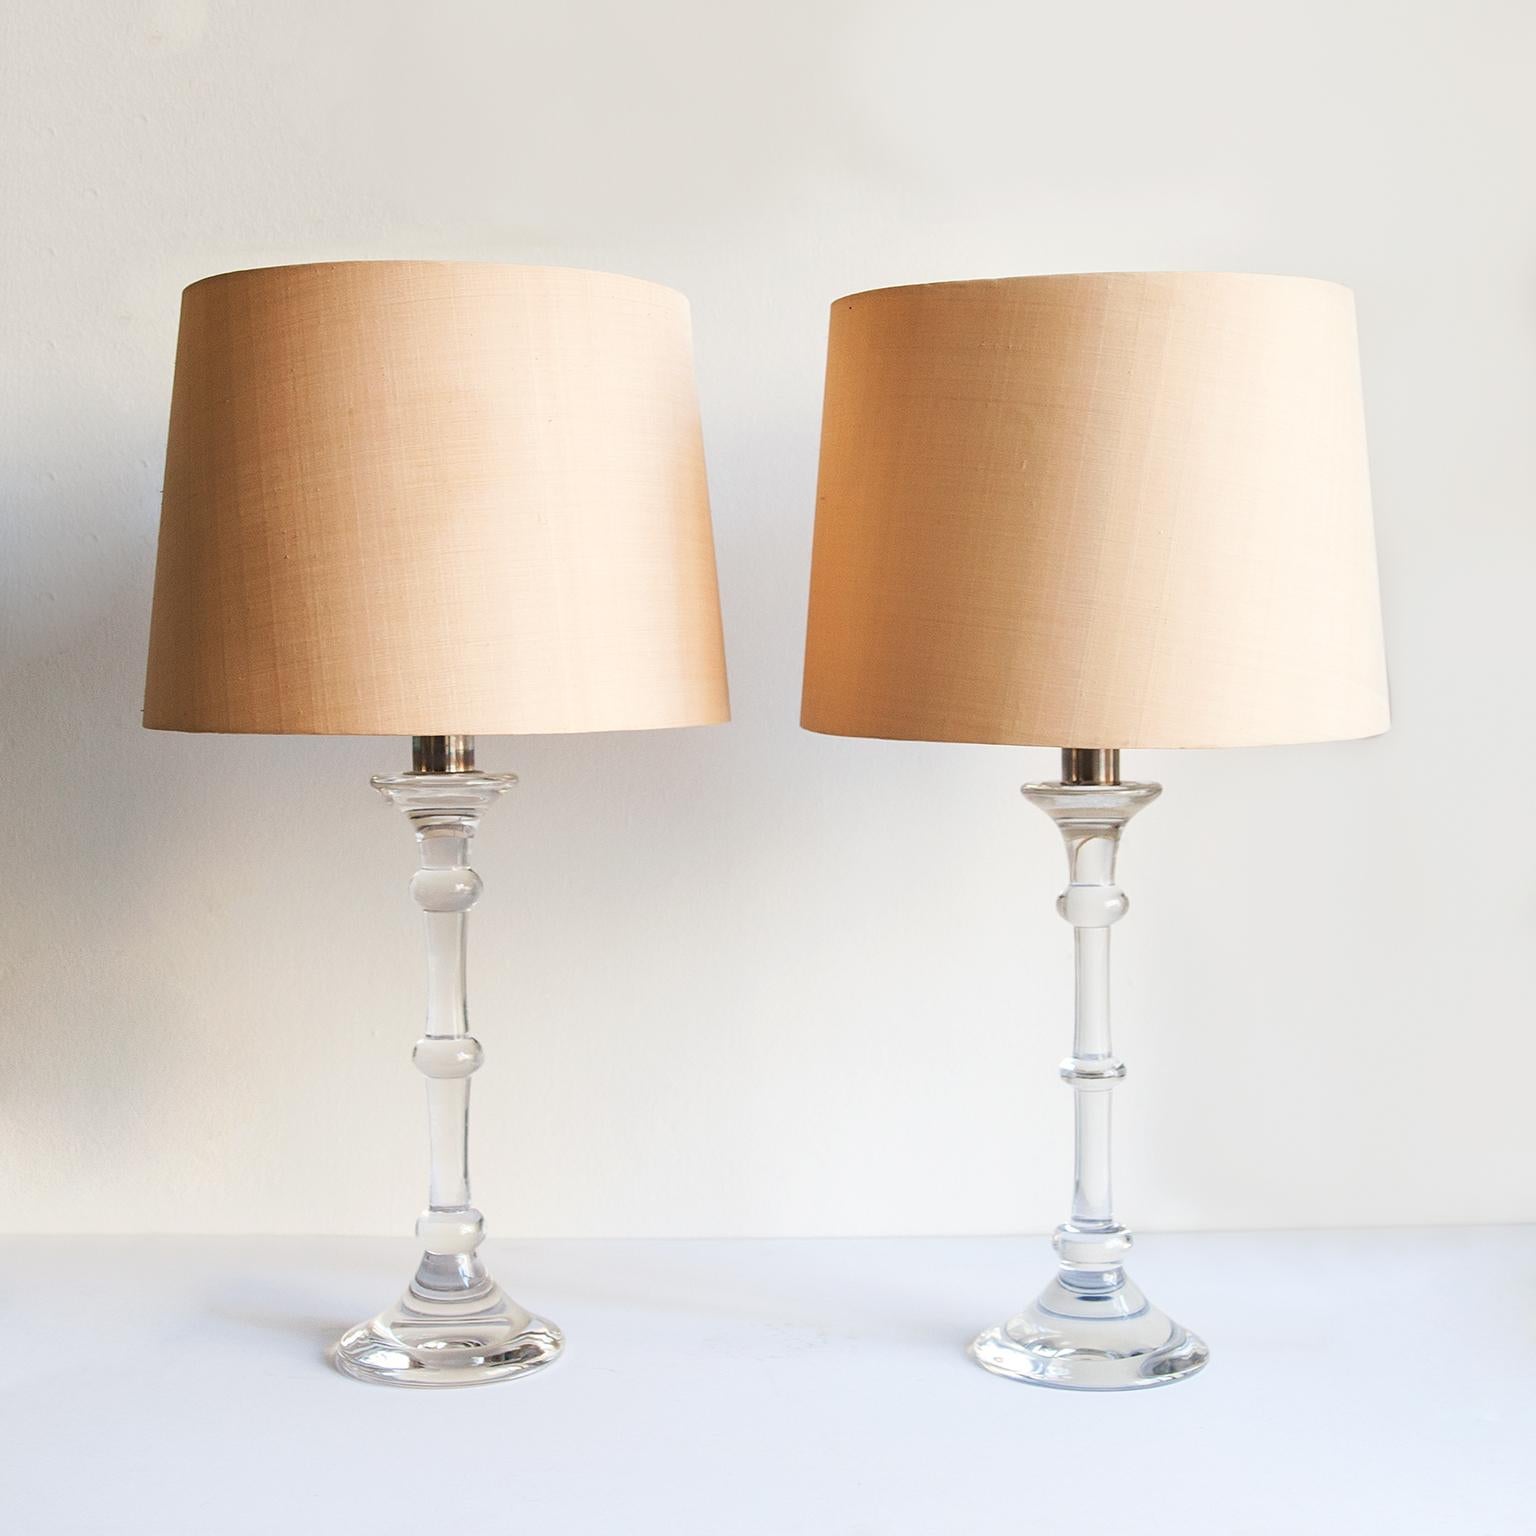 Rare paire de lampes de table Ingo Maurer réalisée par Val Saint Lambert, 1969.
Verre de cristal massif et abat-jour en papier de soie sauvage crème.